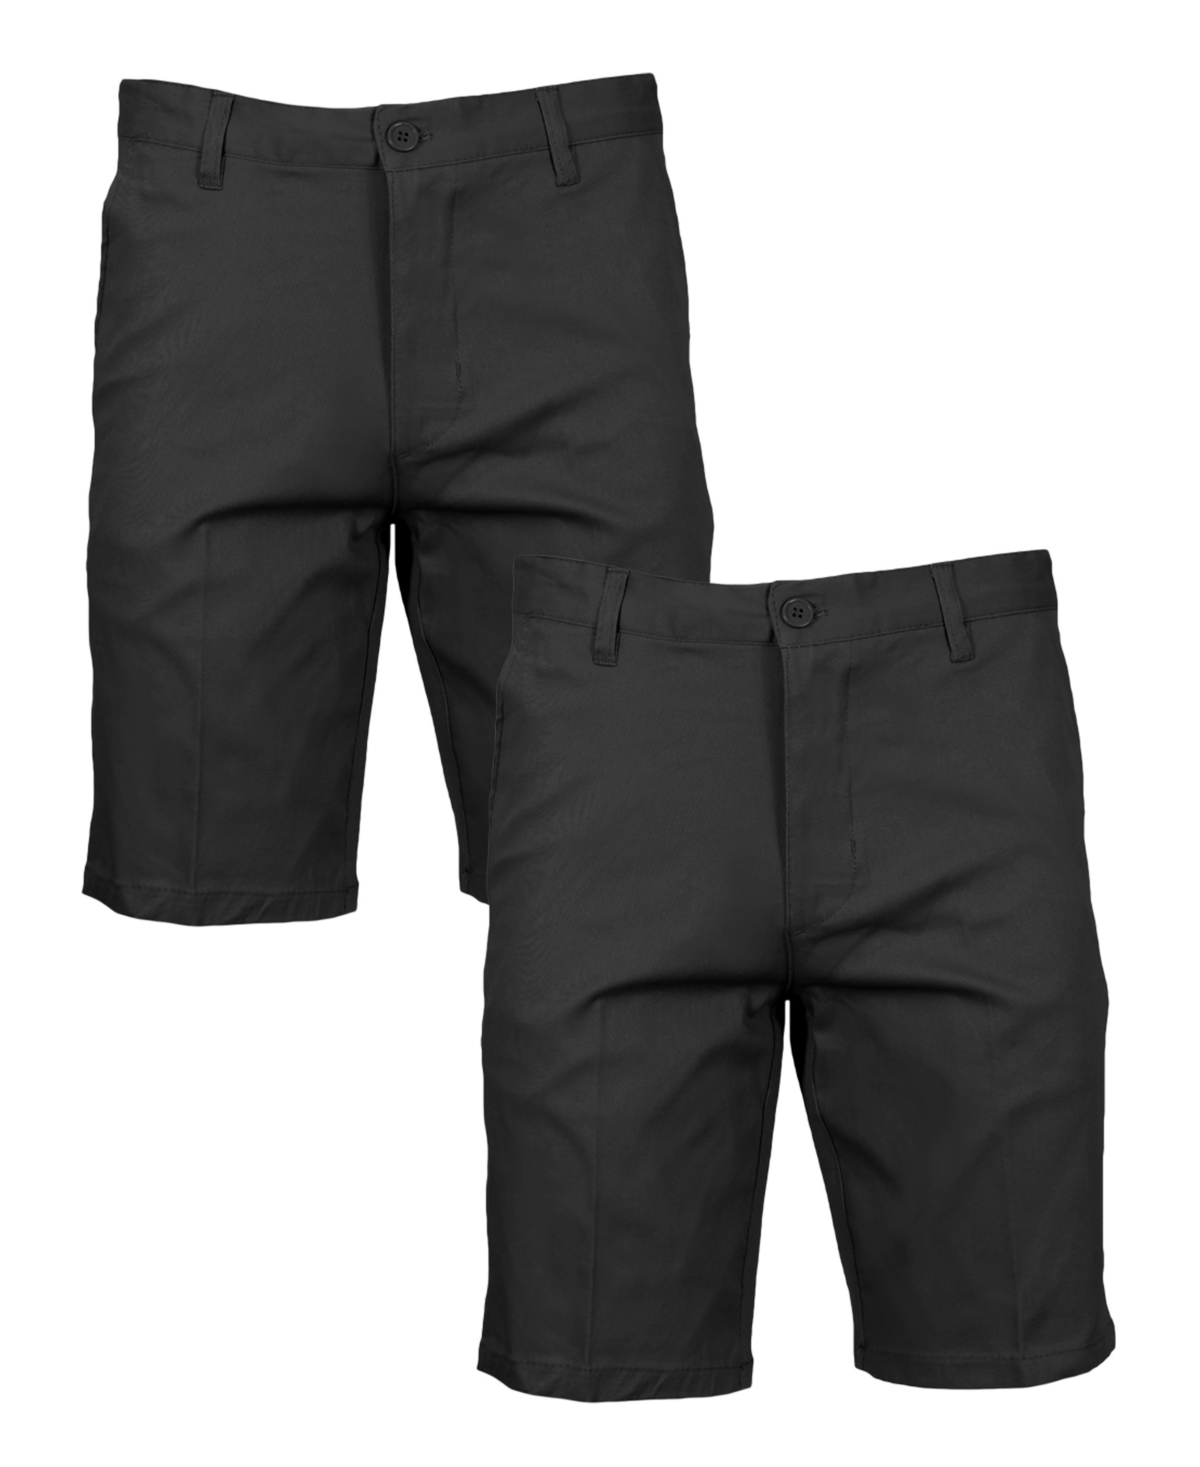 Men's Slim Fitting Cotton Flex Stretch Chino Shorts, Pack of 2 - Navy Navy